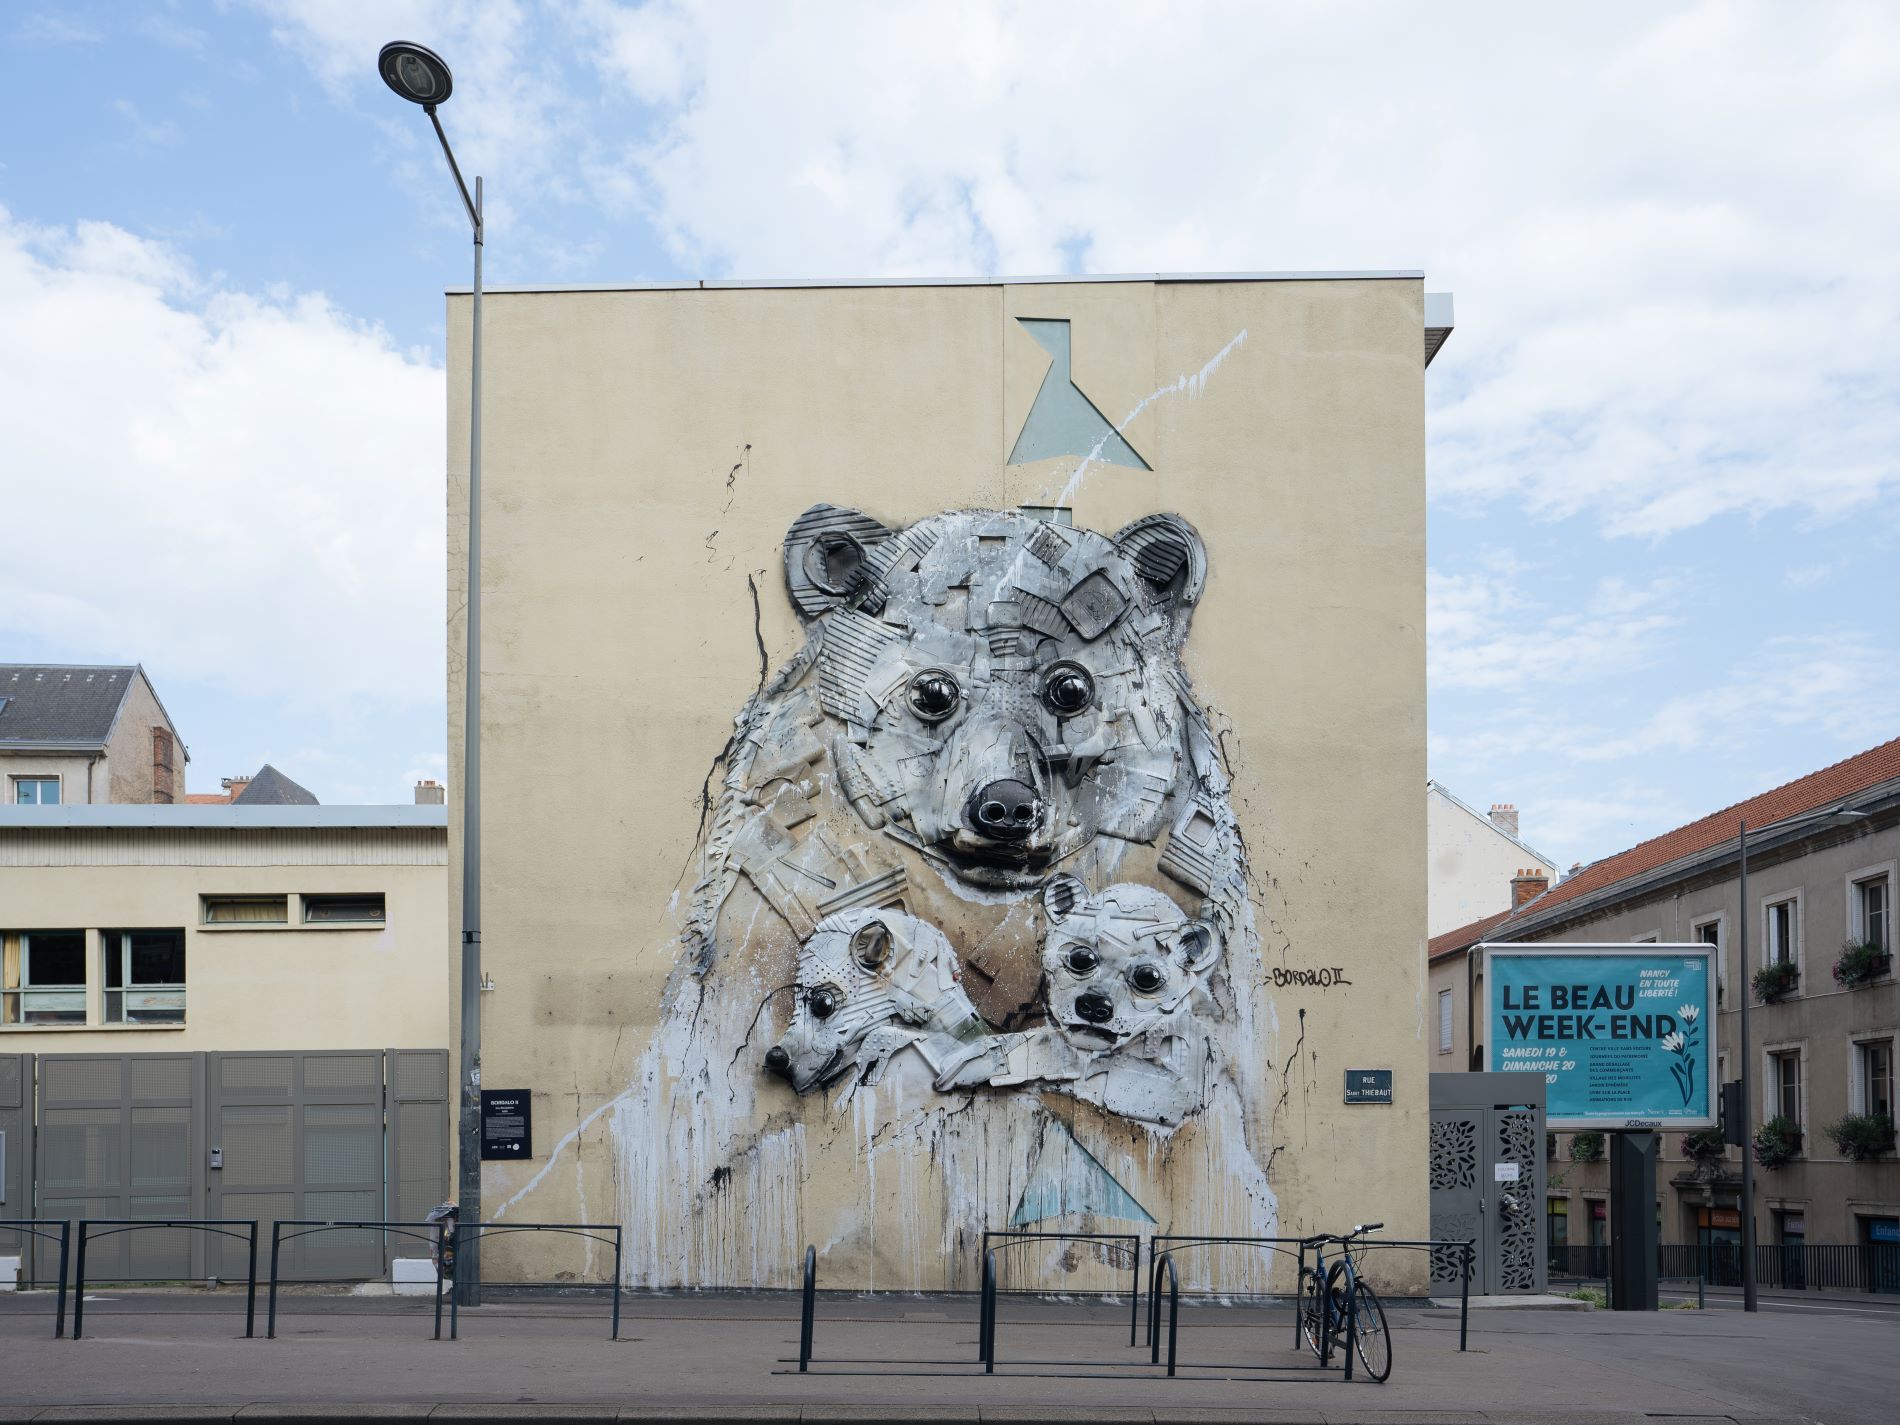 Ein berühmtes Straßenkunstwerk ist an der Seite eines Gebäudes zu sehen. Es zeigt drei Eisbären, eine Mutter mit ihren beiden Babys.